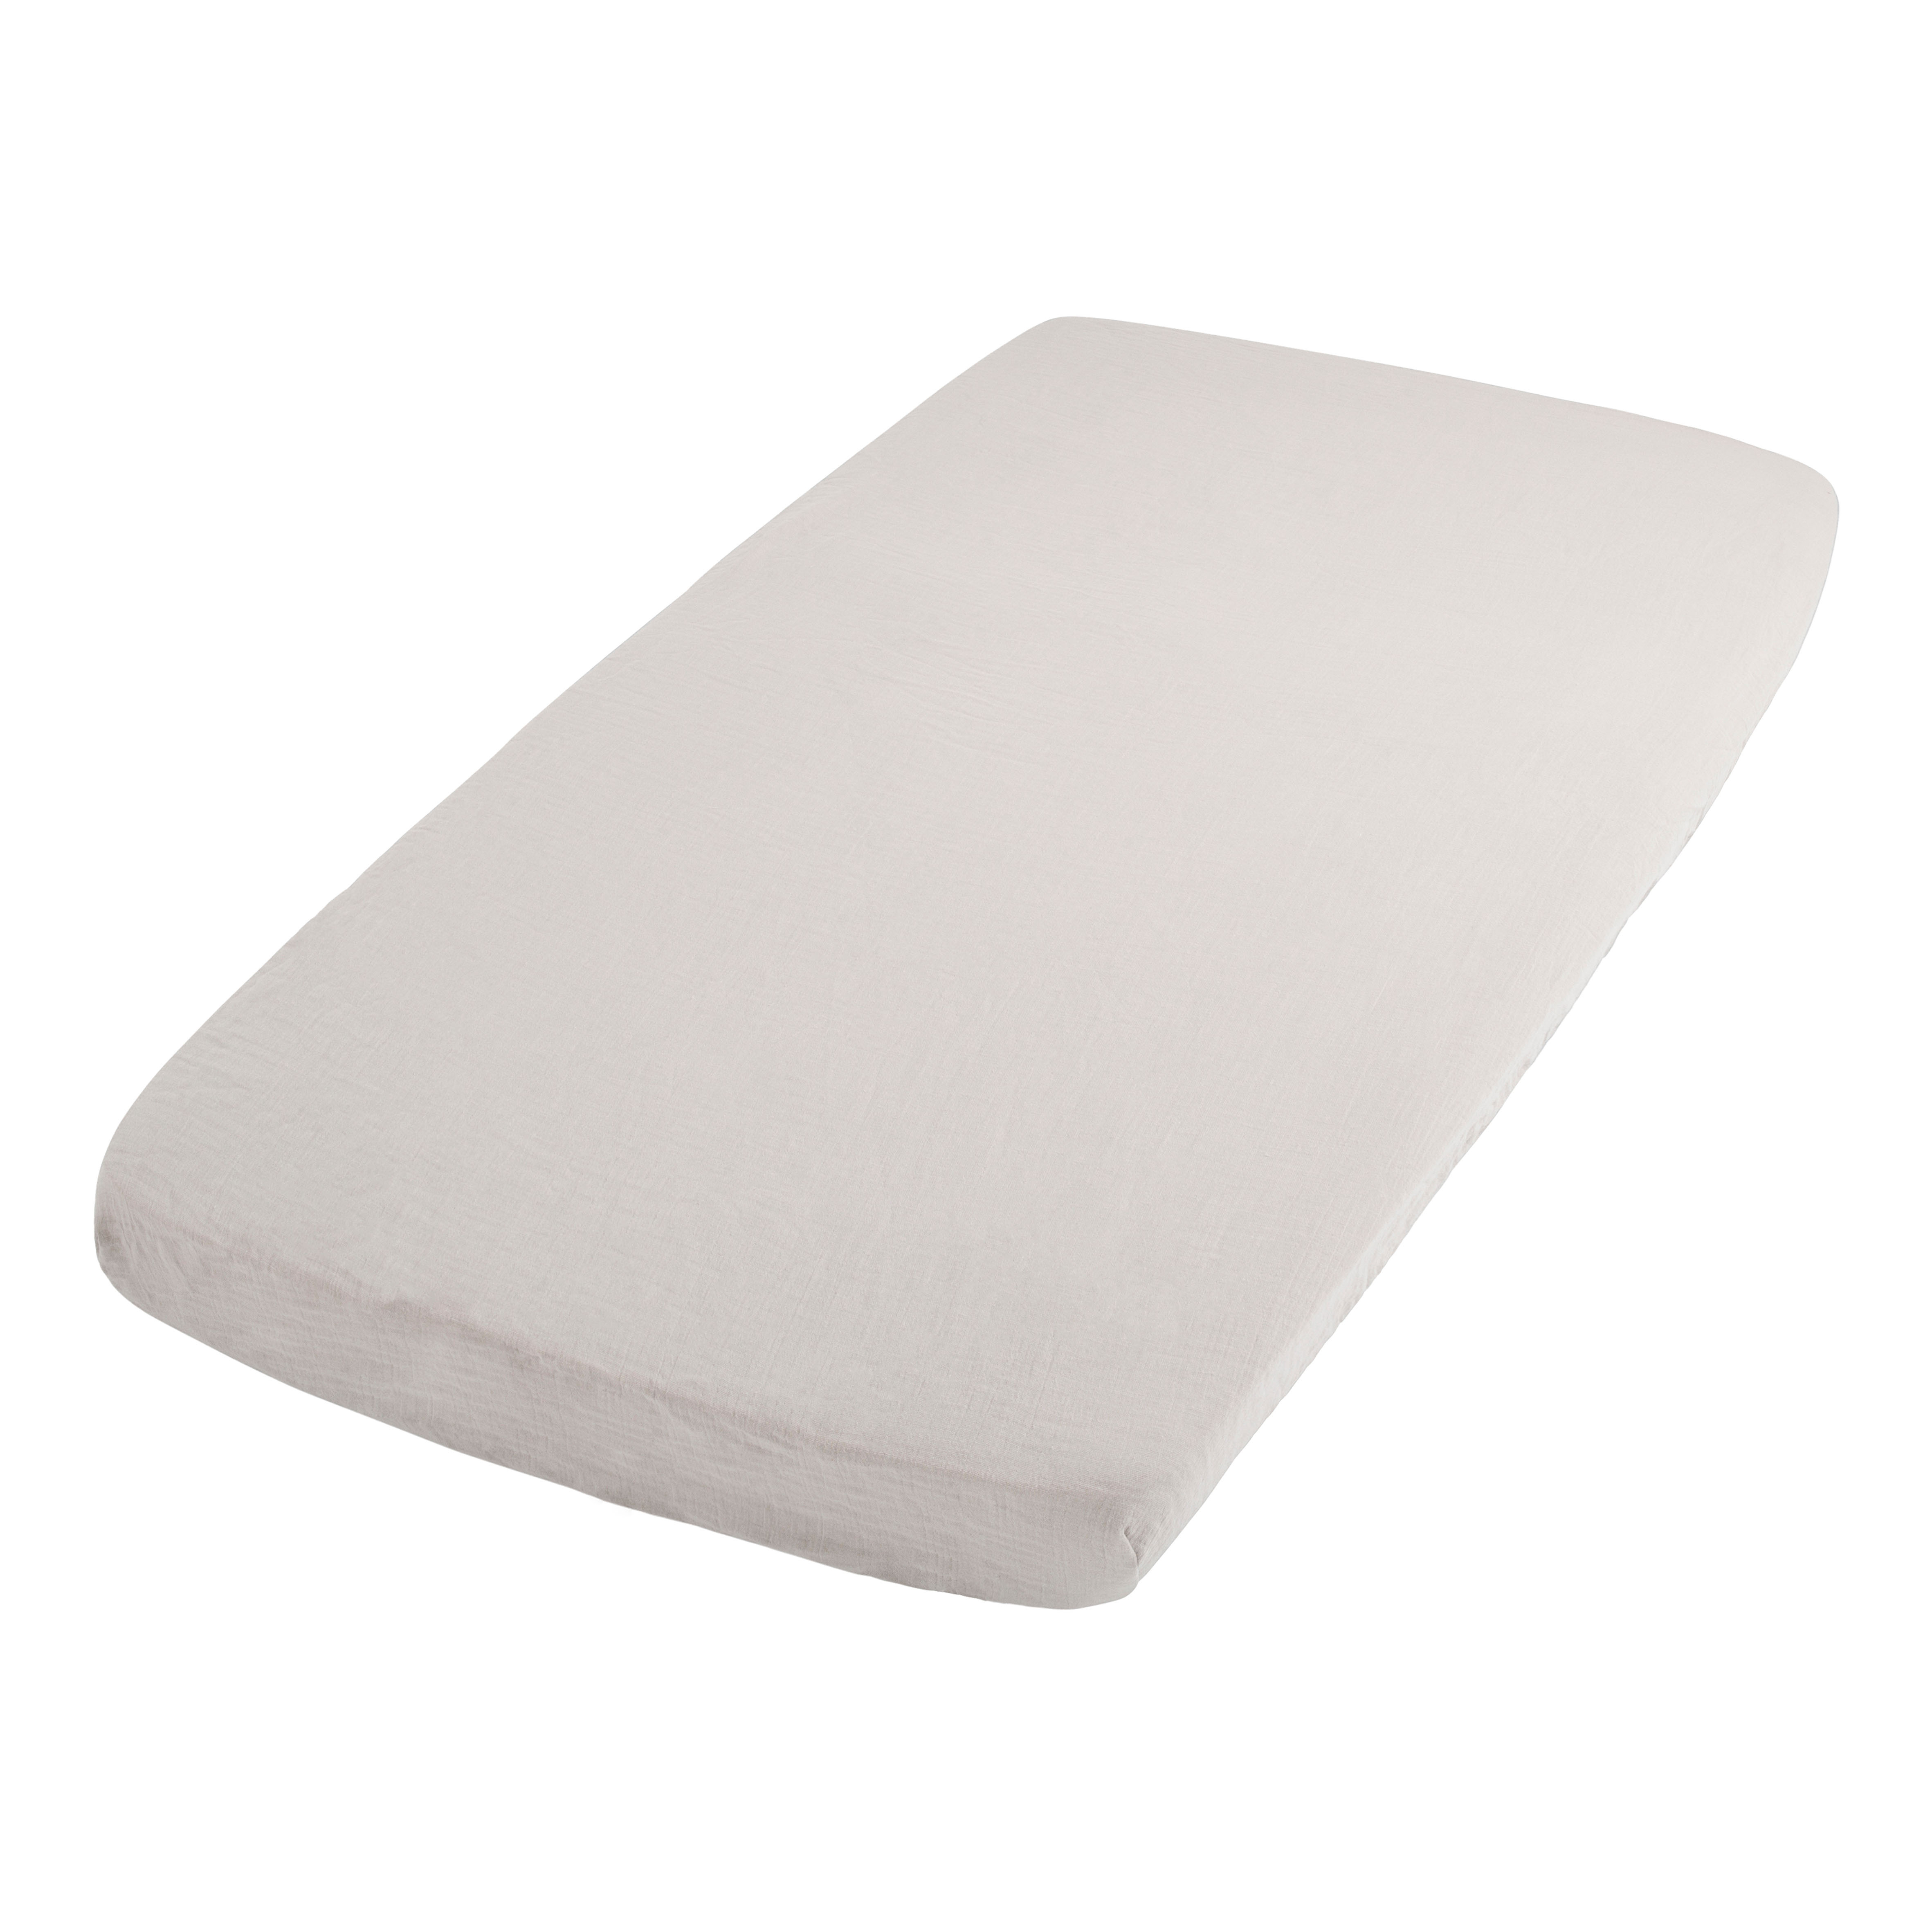 Fitted sheet Breeze warm linen - 60x120